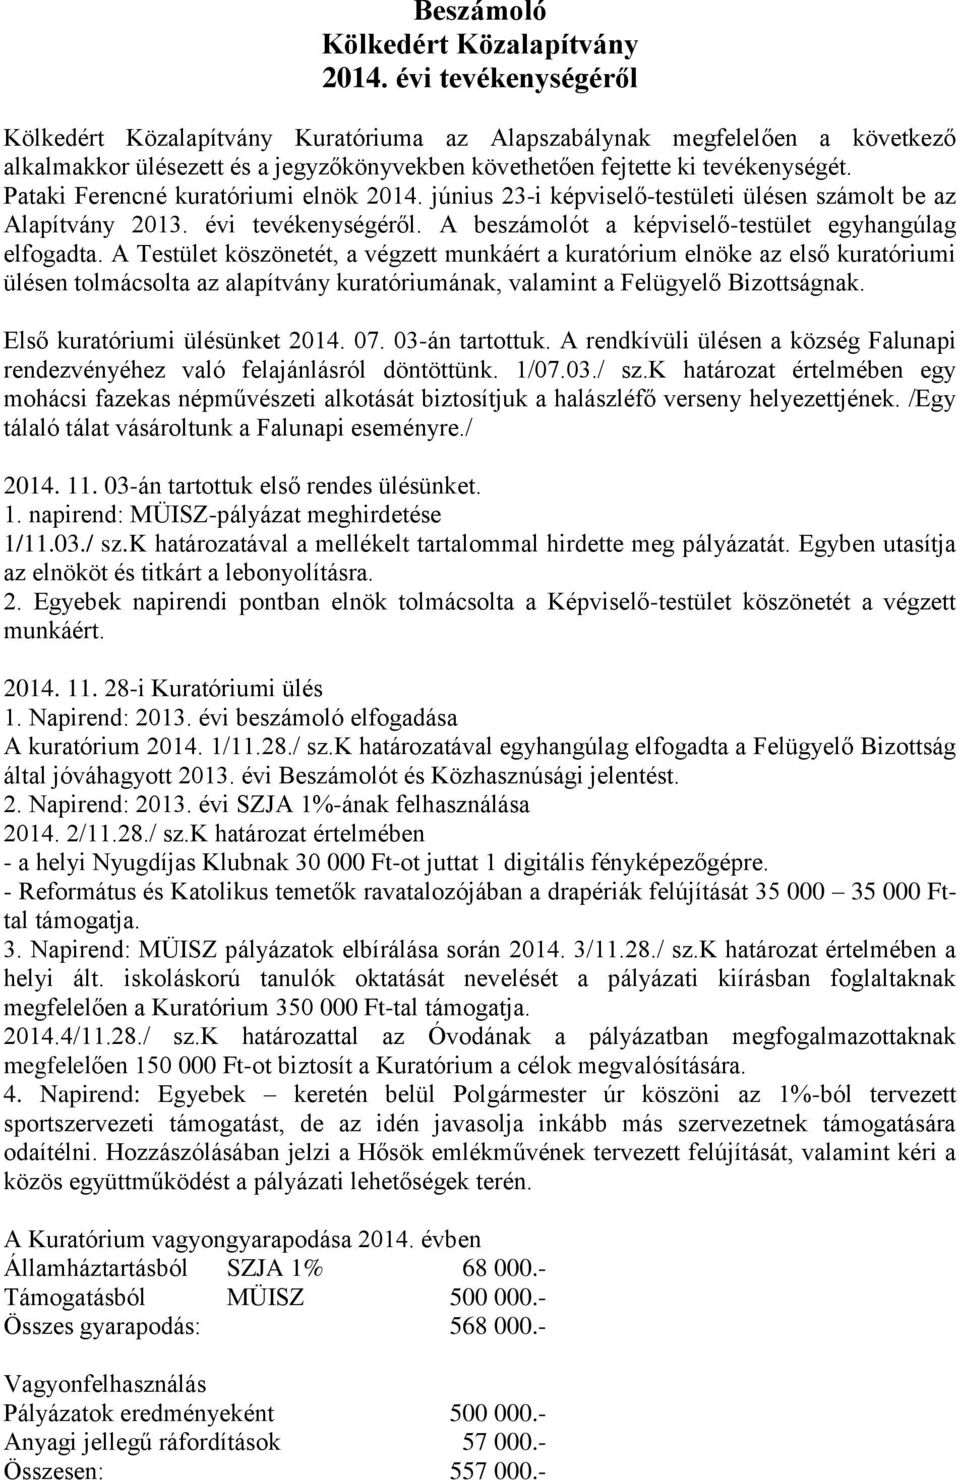 Pataki Ferencné kuratóriumi elnök 2014. június 23-i képviselő-testületi ülésen számolt be az Alapítvány 2013. évi tevékenységéről. A beszámolót a képviselő-testület egyhangúlag elfogadta.